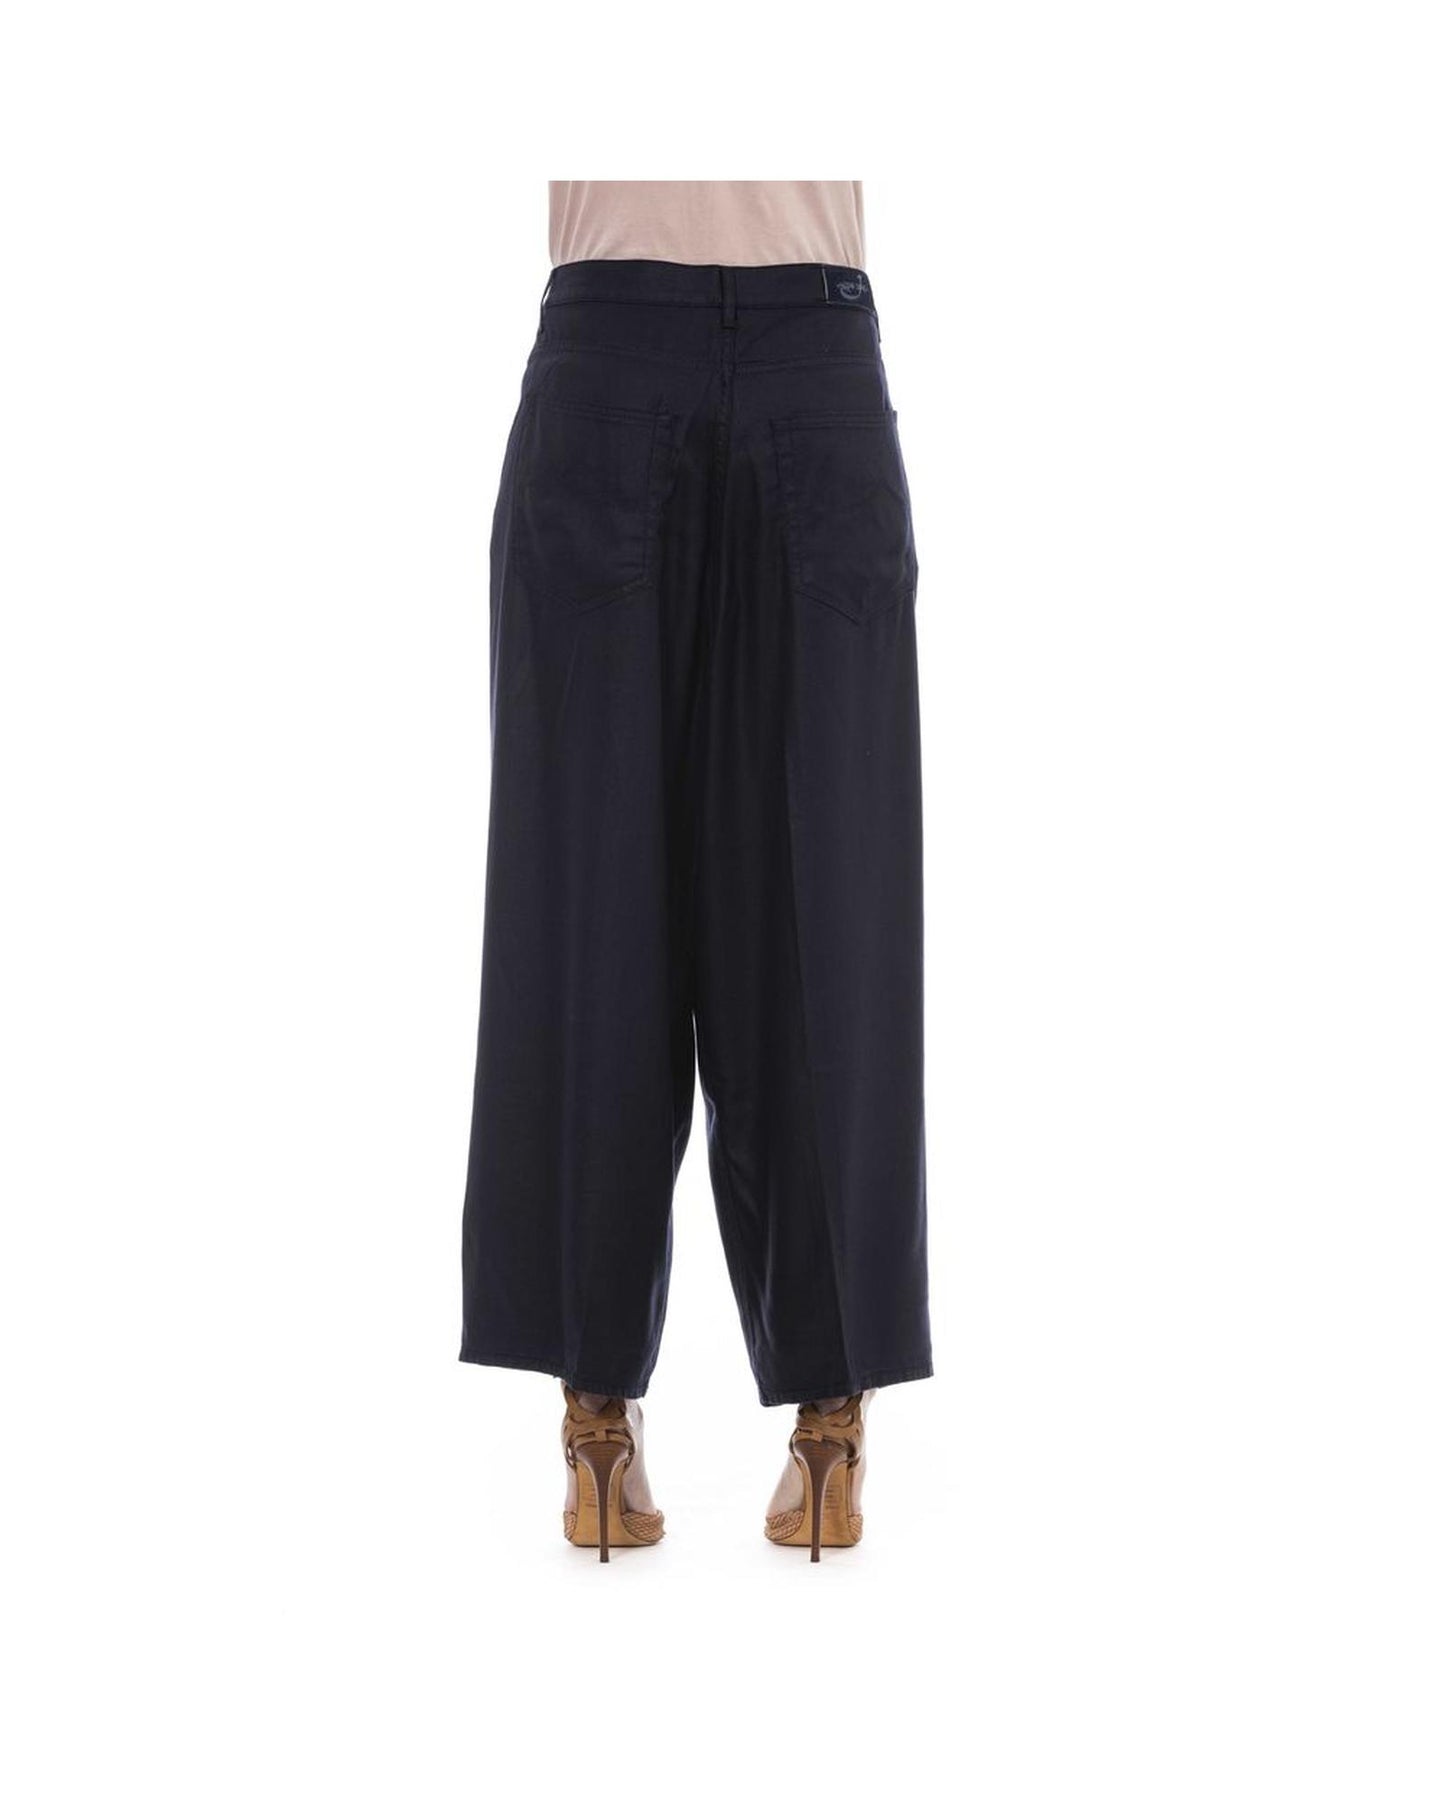 Jacob Cohen Women's Elegant Black Cotton Trousers with Pockets - W27 US